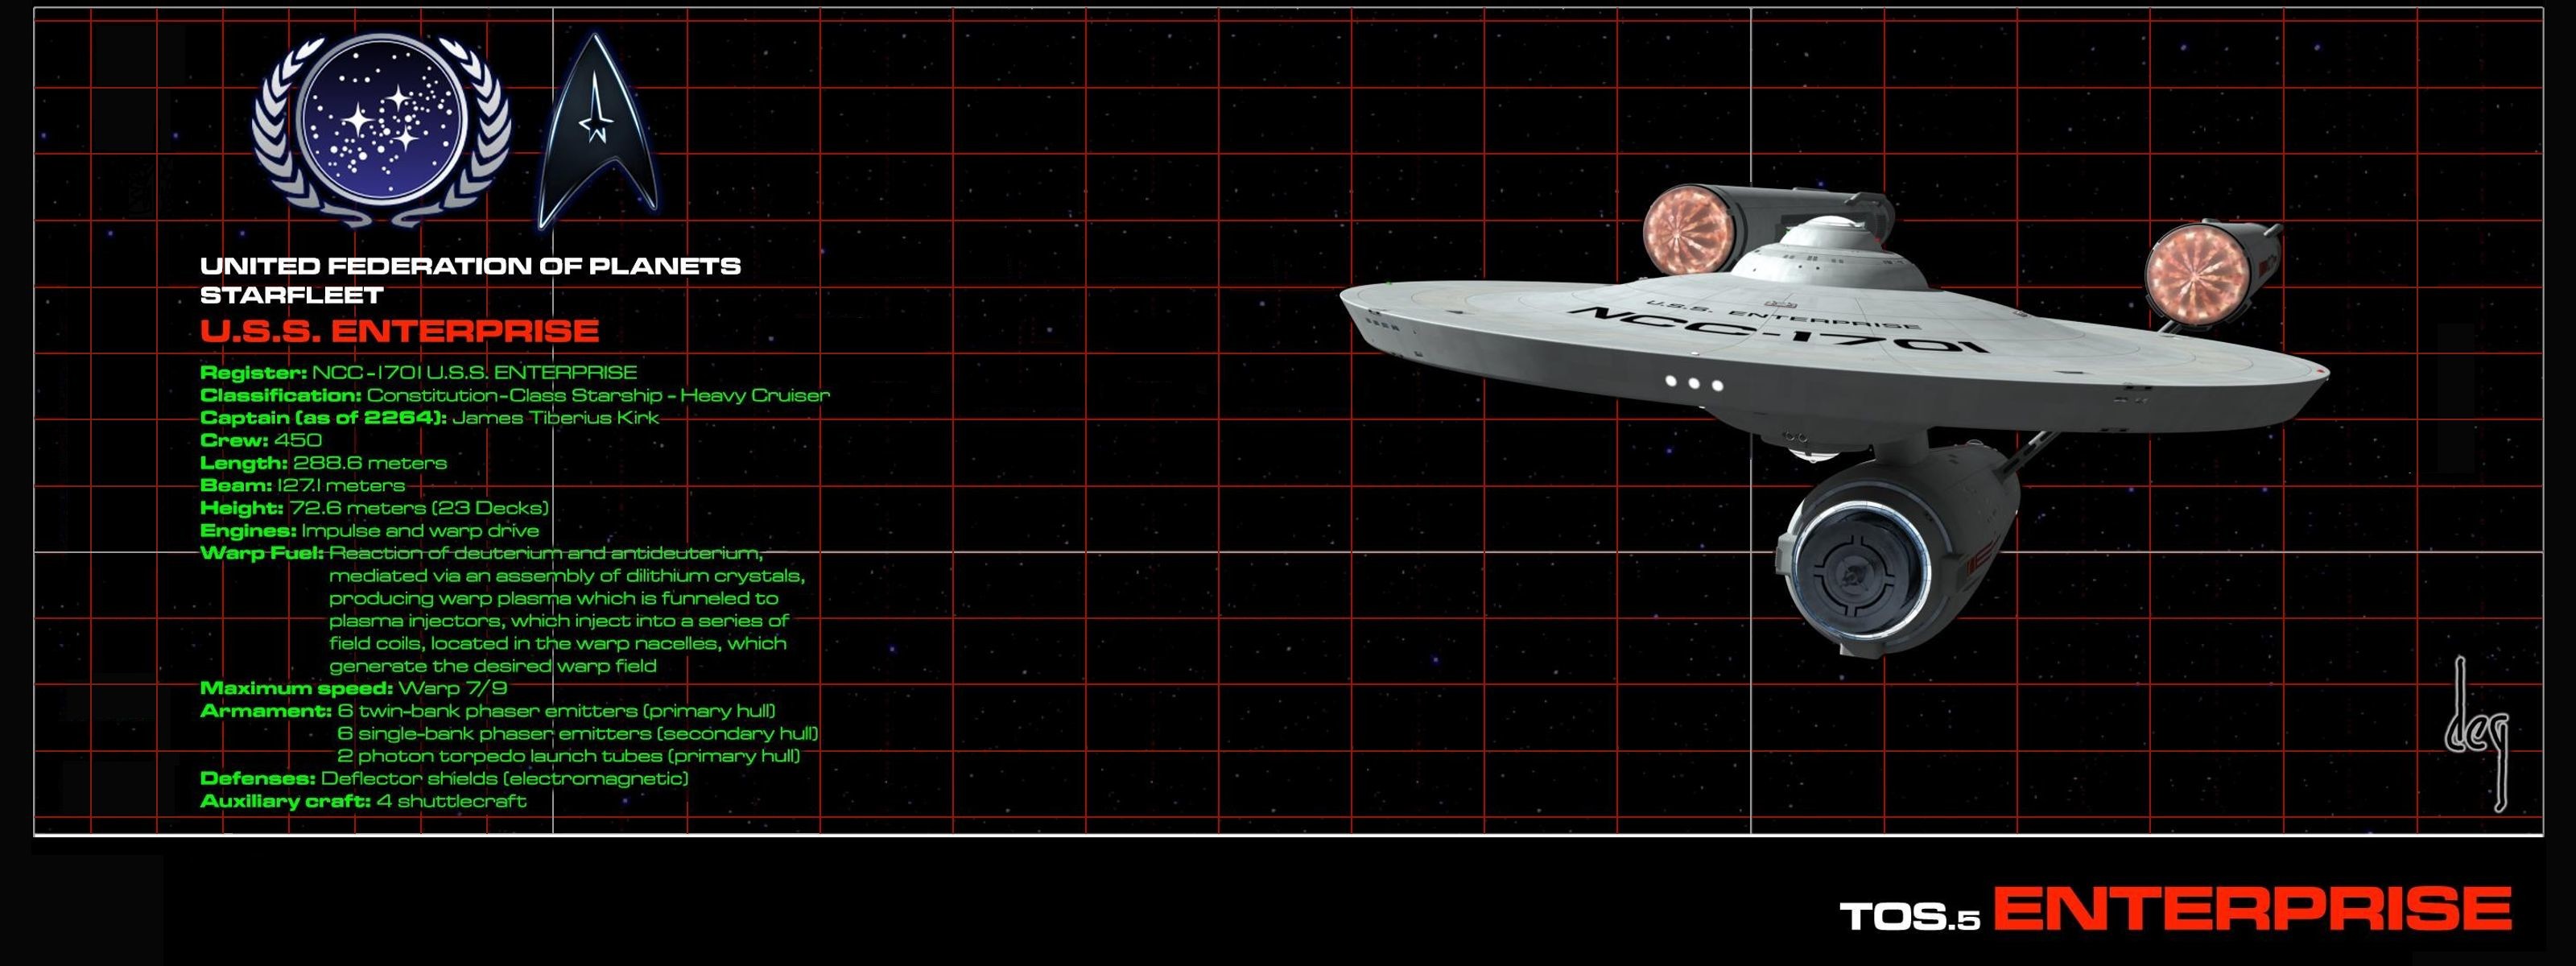 3200x1200 Sci Fi - Star Trek Wallpaper